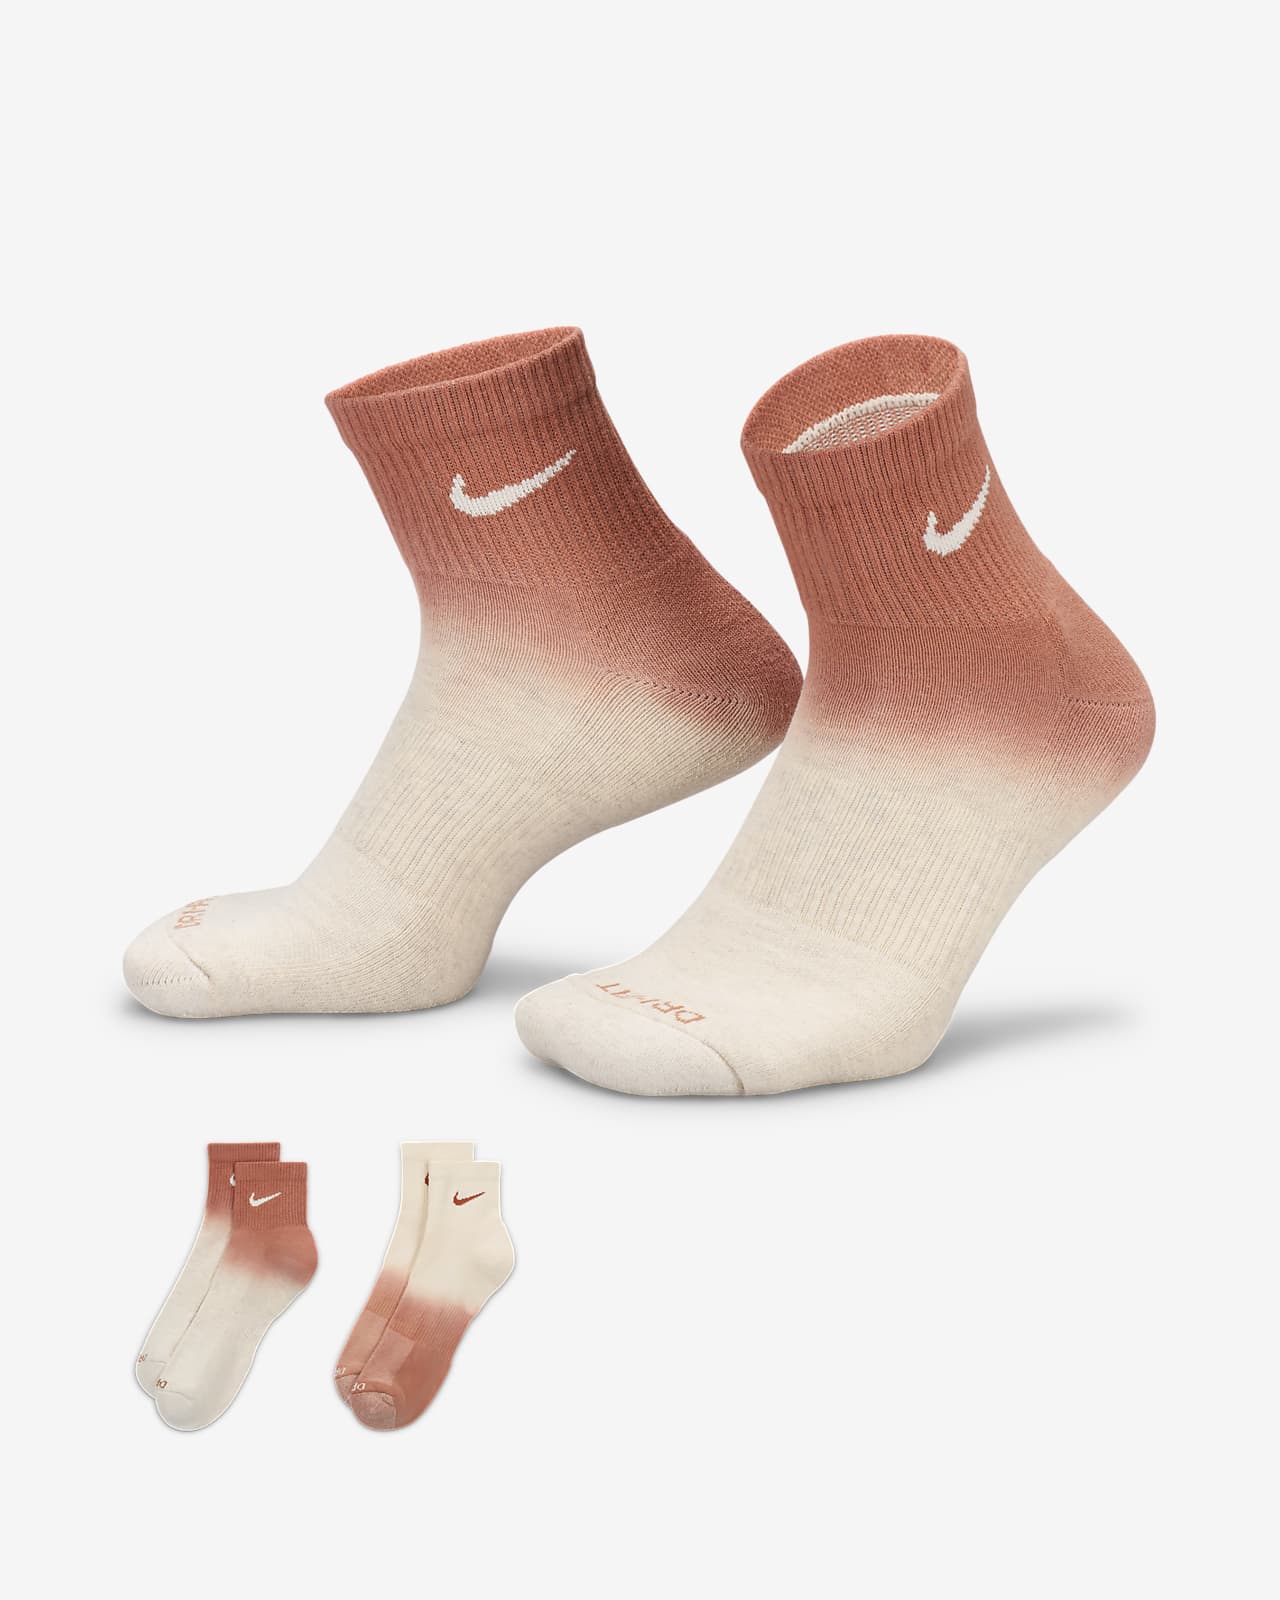 Nike Everyday Plus Yastıklamalı Bilek Çorapları (2 Çift)